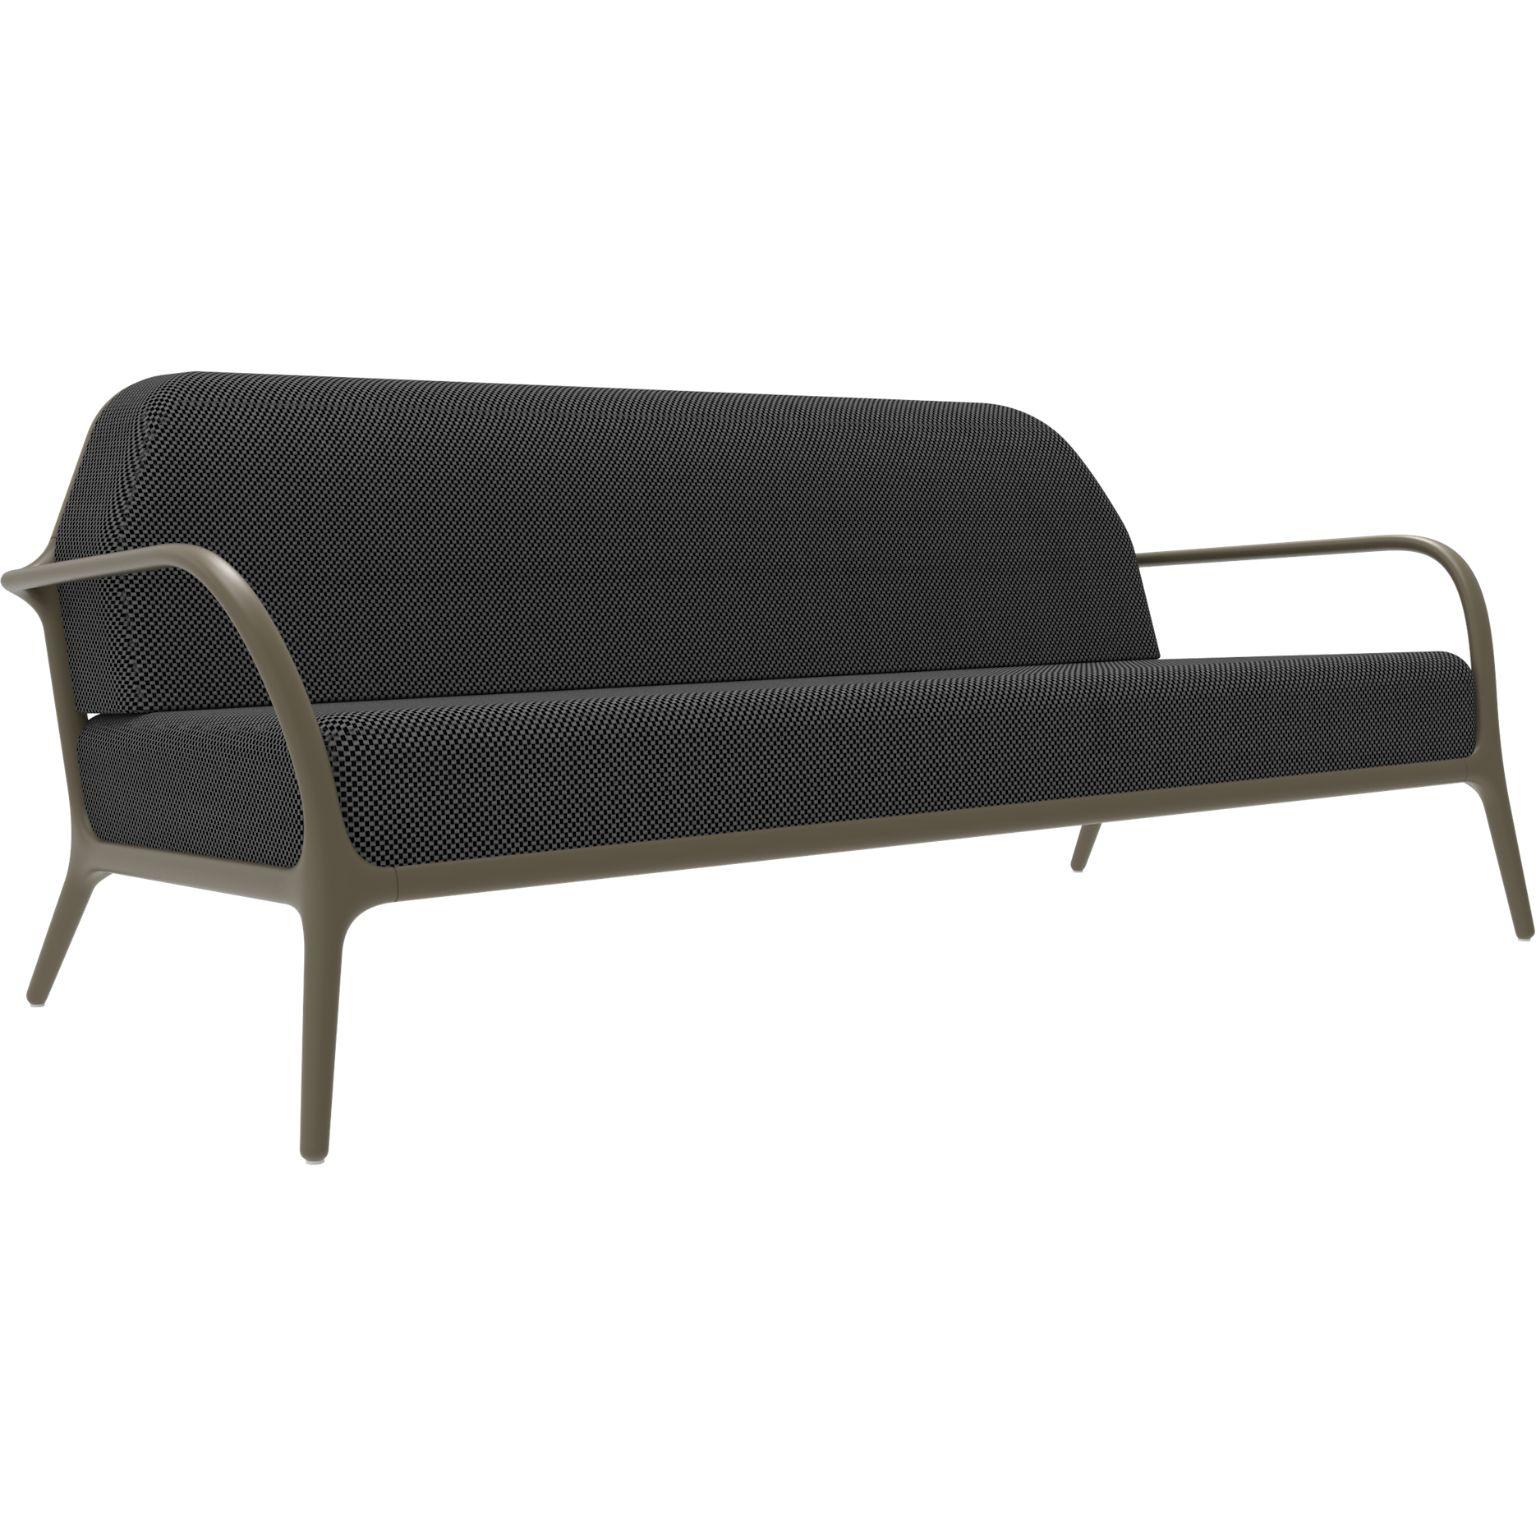 Xaloc bronze sofá von MOWEE
Abmessungen: T100 x B200 x H81 cm (Sitzhöhe 42 cm)
MATERIAL: Aluminium, Textil
Gewicht: 46 kg
Auch in verschiedenen Farben und Ausführungen erhältlich. 

 Xaloc synthetisiert die Linien der Inneneinrichtung und